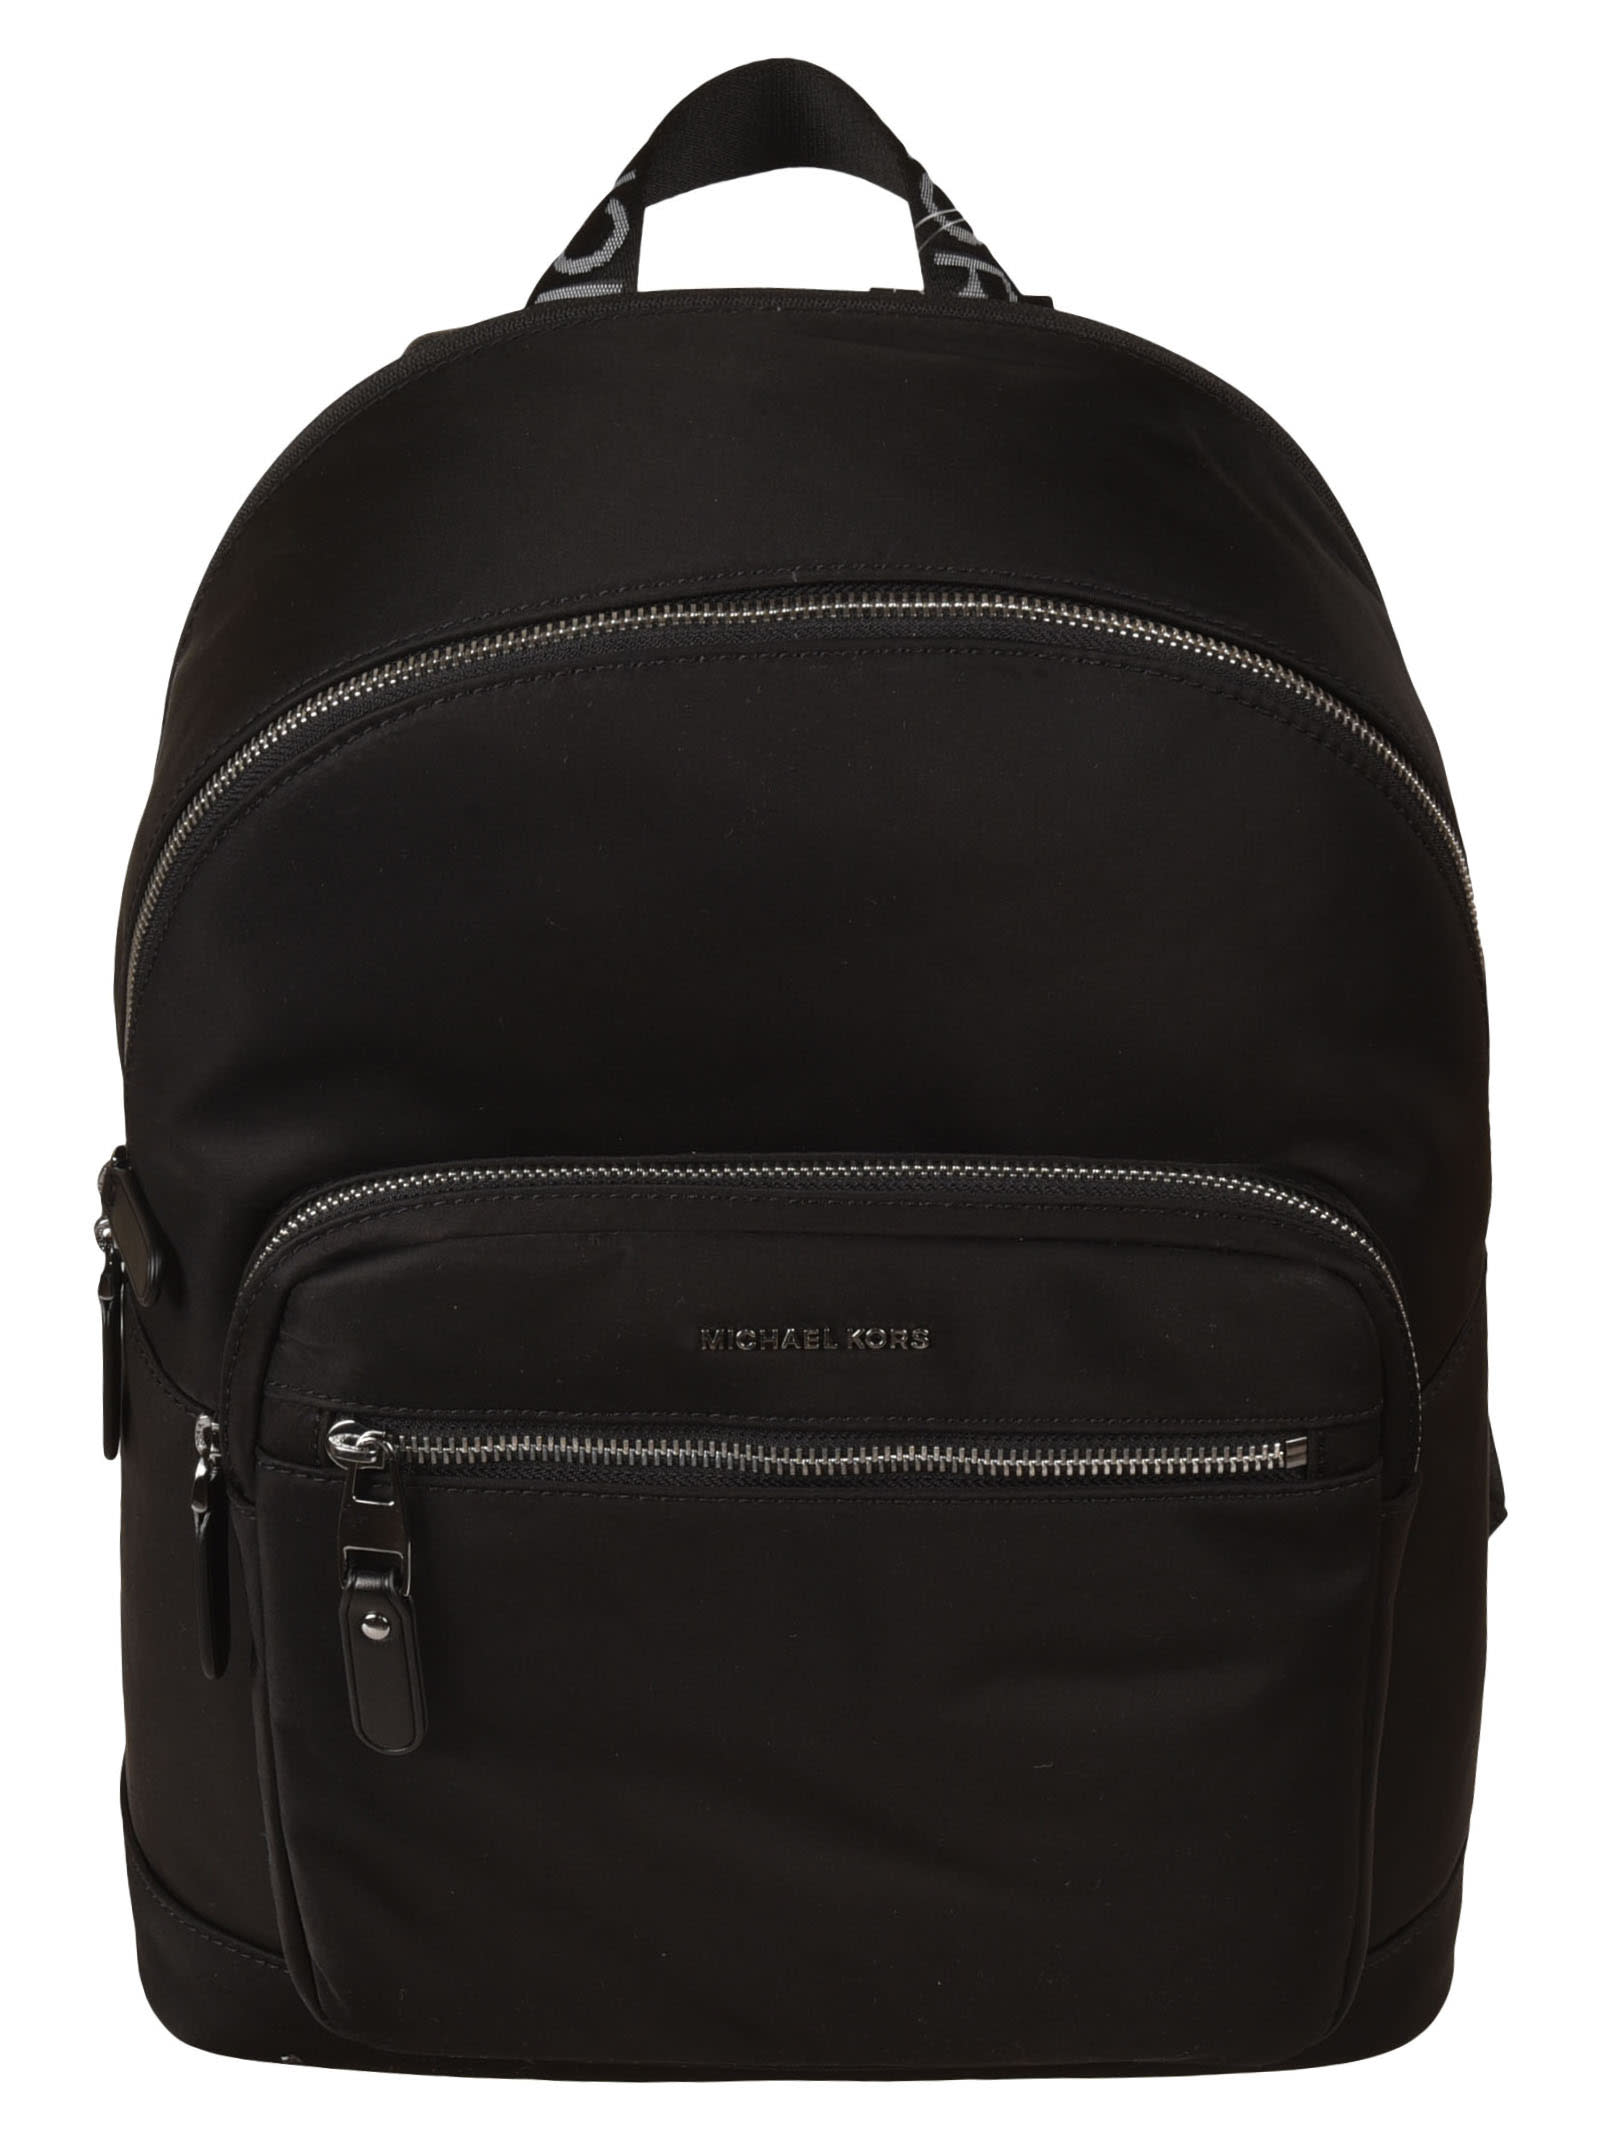 Michael Kors Embossed Logo Mesh Paneled Backpack